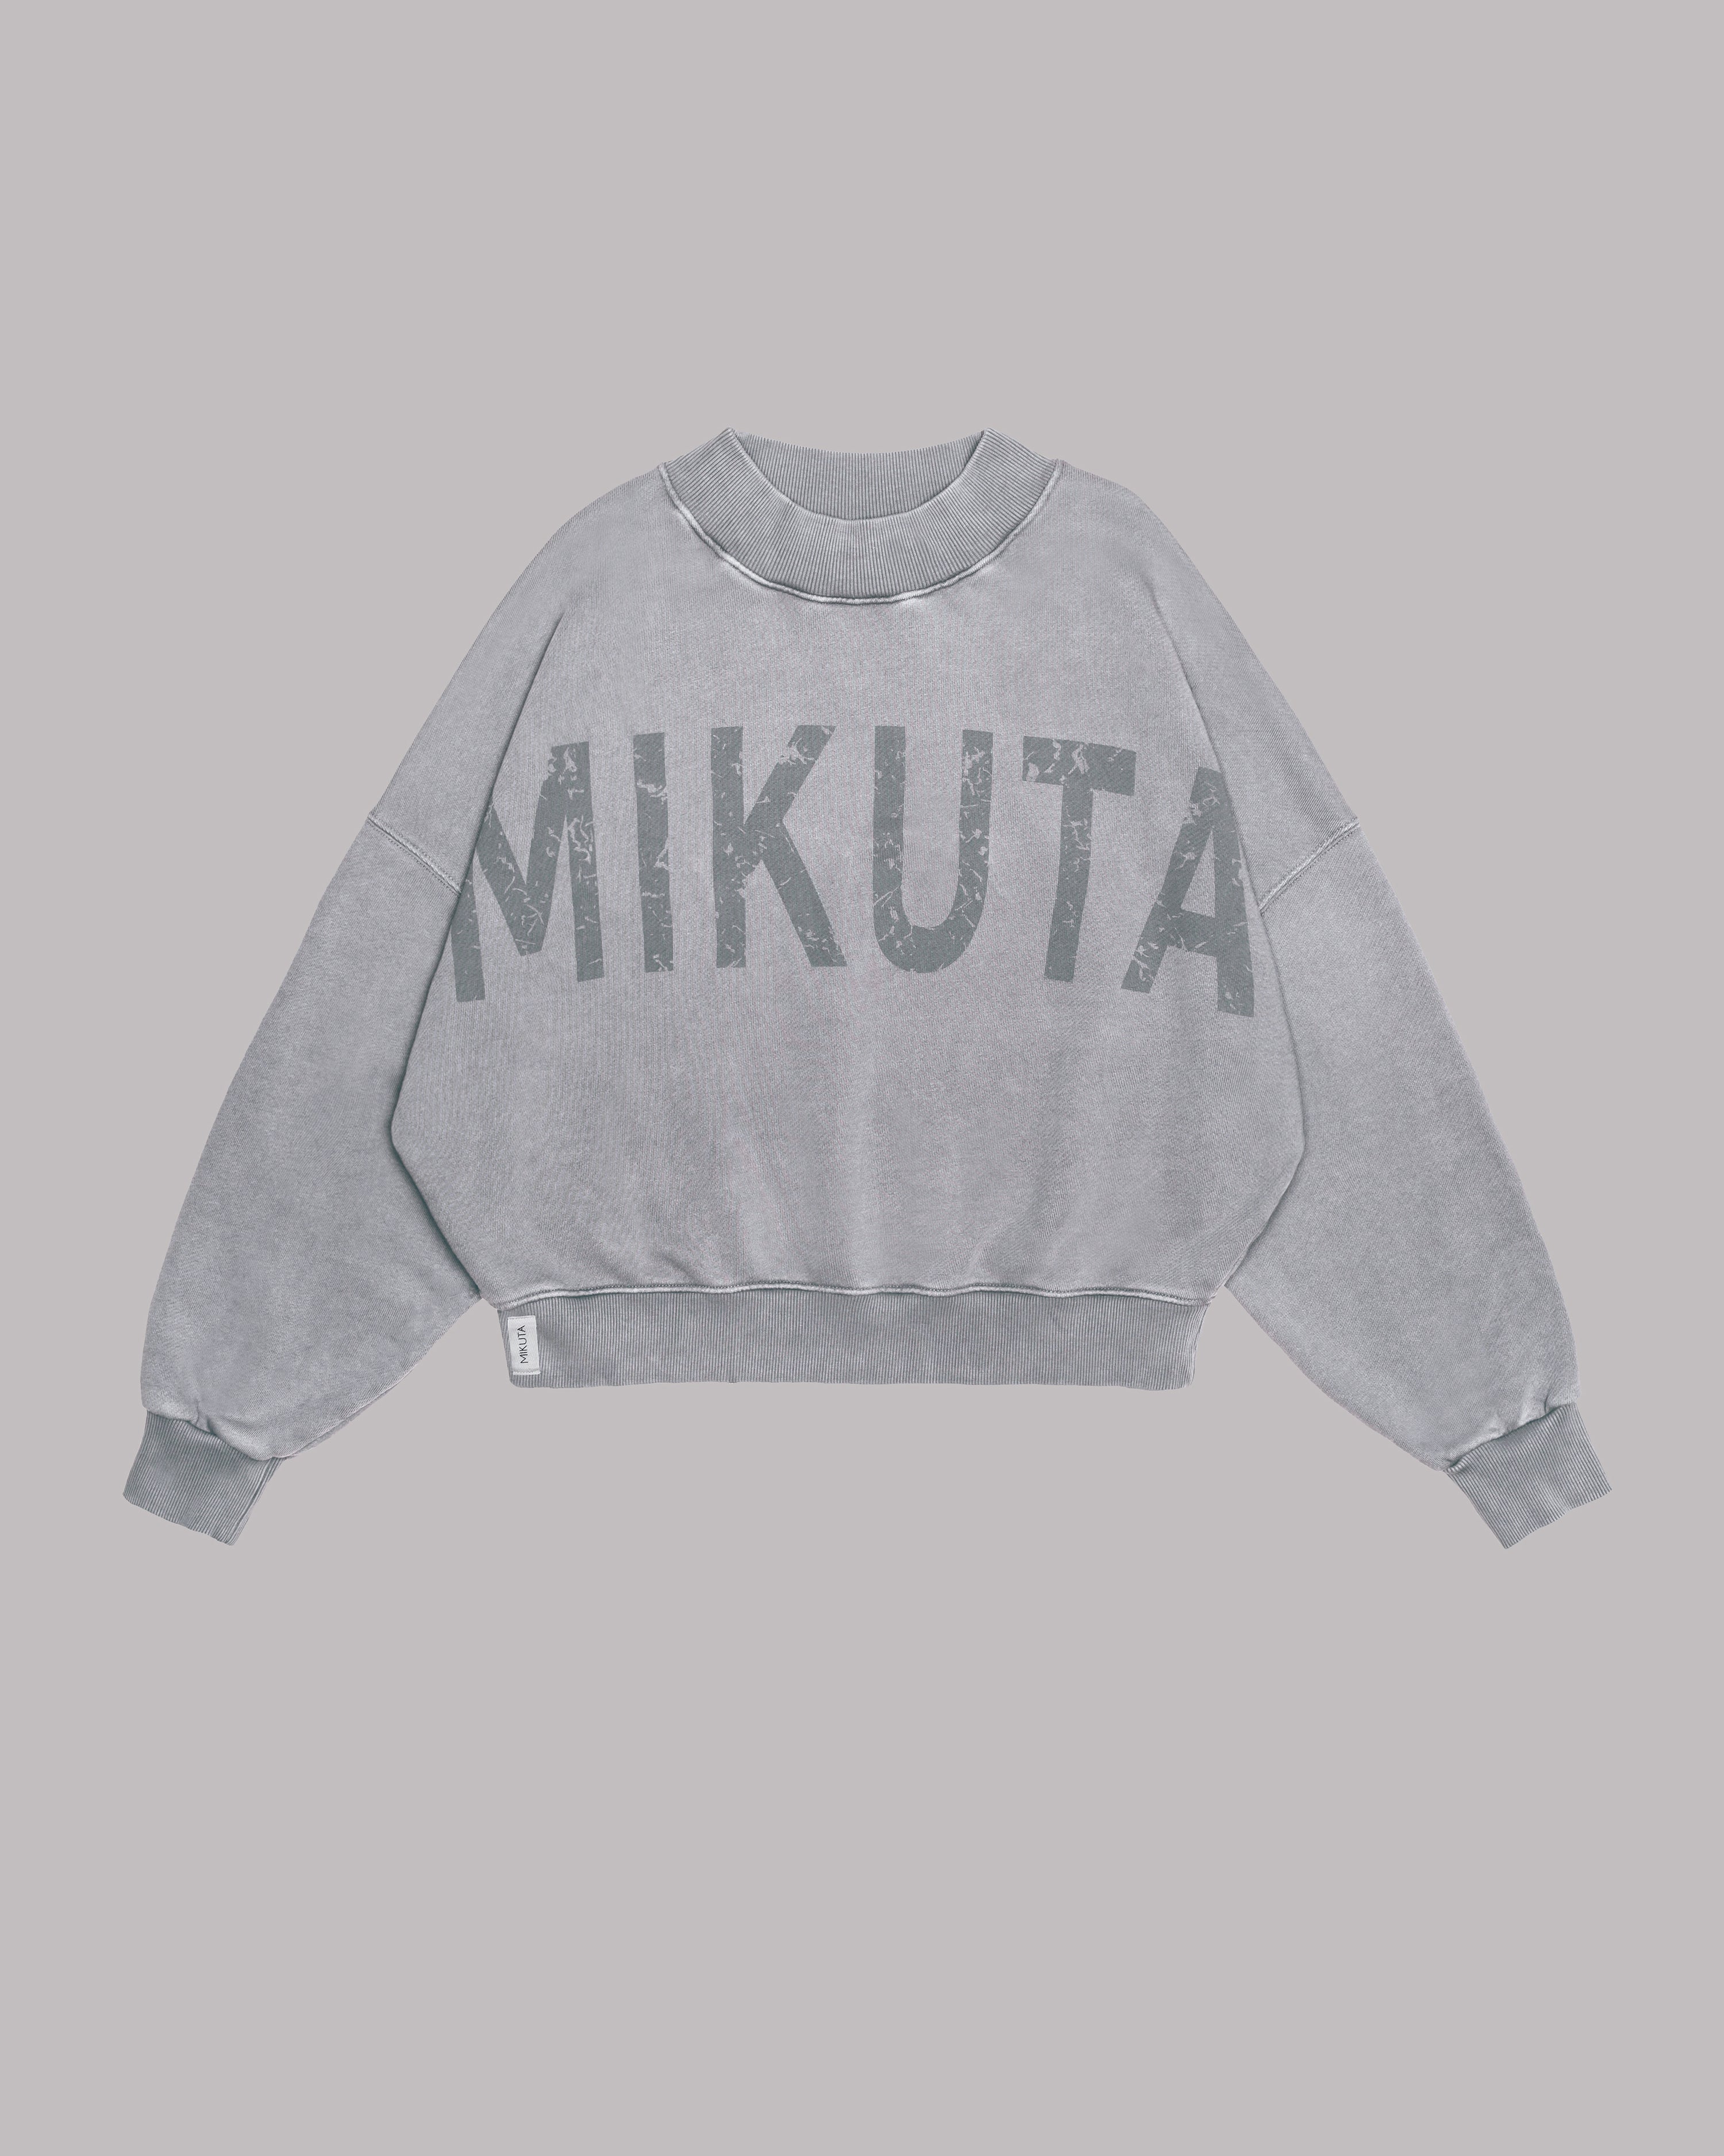 The Light Mikuta Sweater